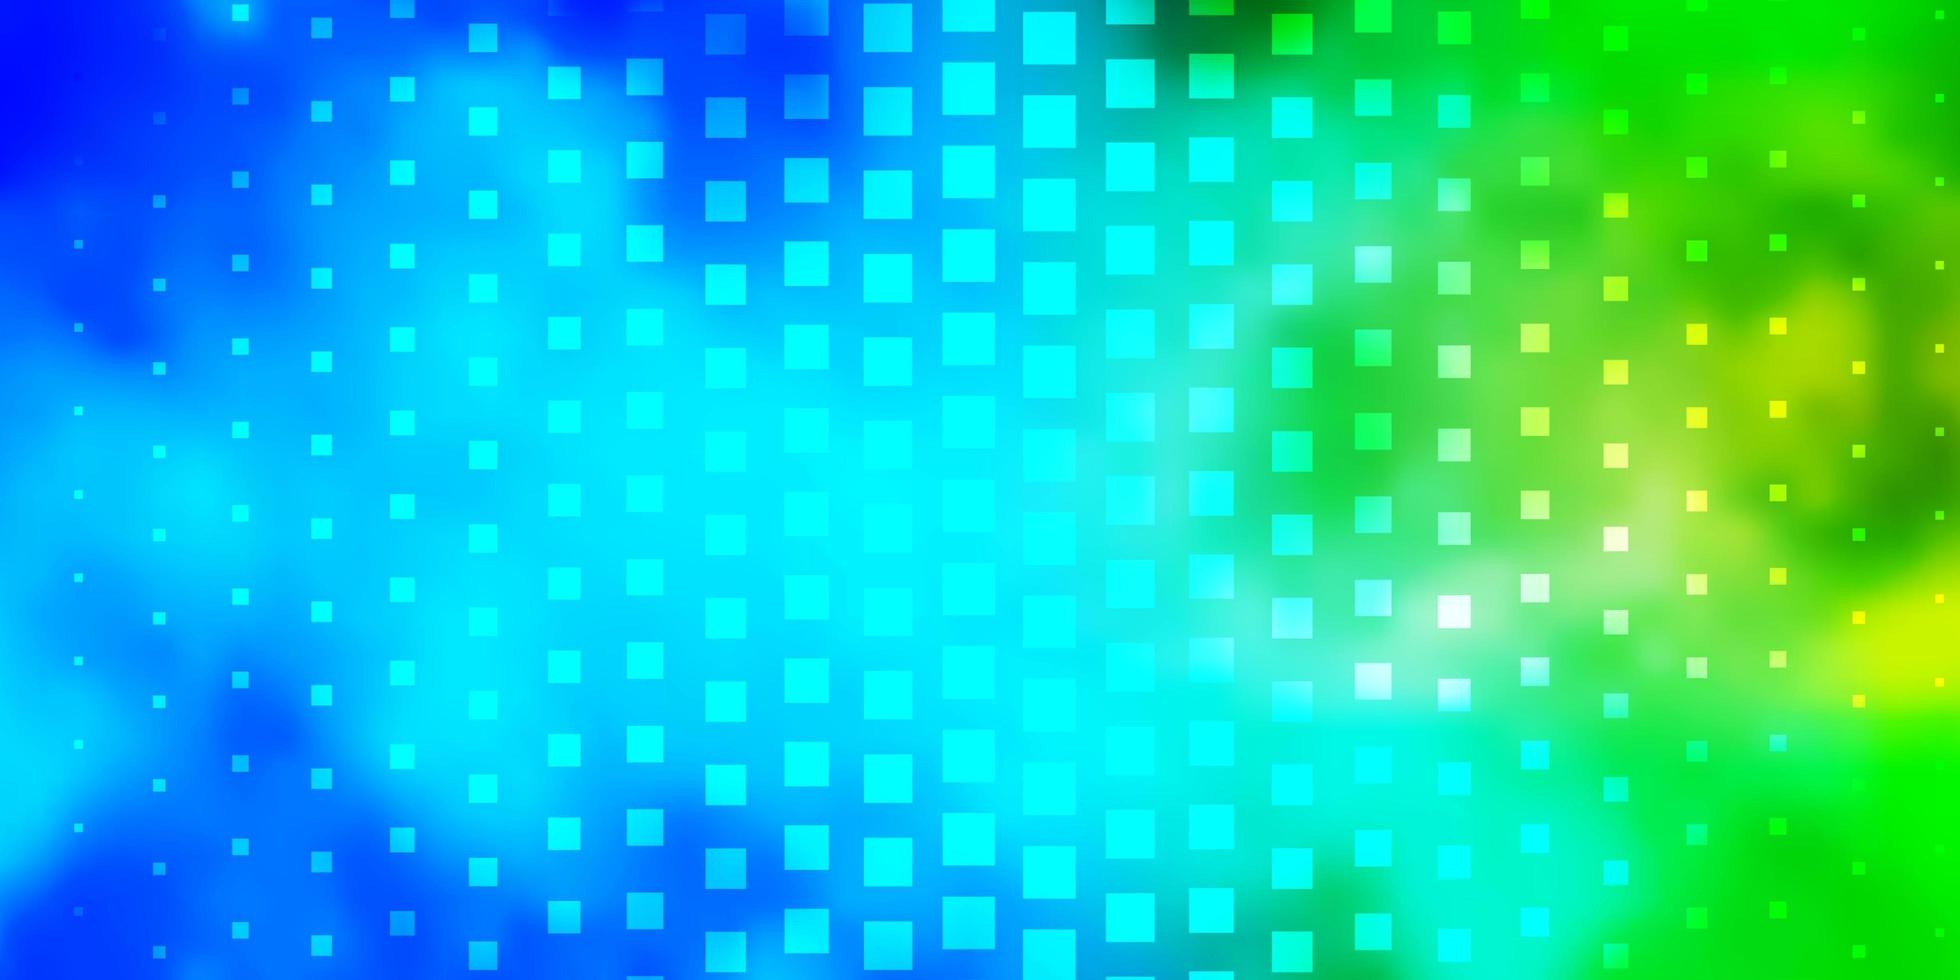 sfondo vettoriale azzurro verde con rettangoli illustrazione sfumata astratta con motivo a rettangoli colorati per opuscoli aziendali opuscoli